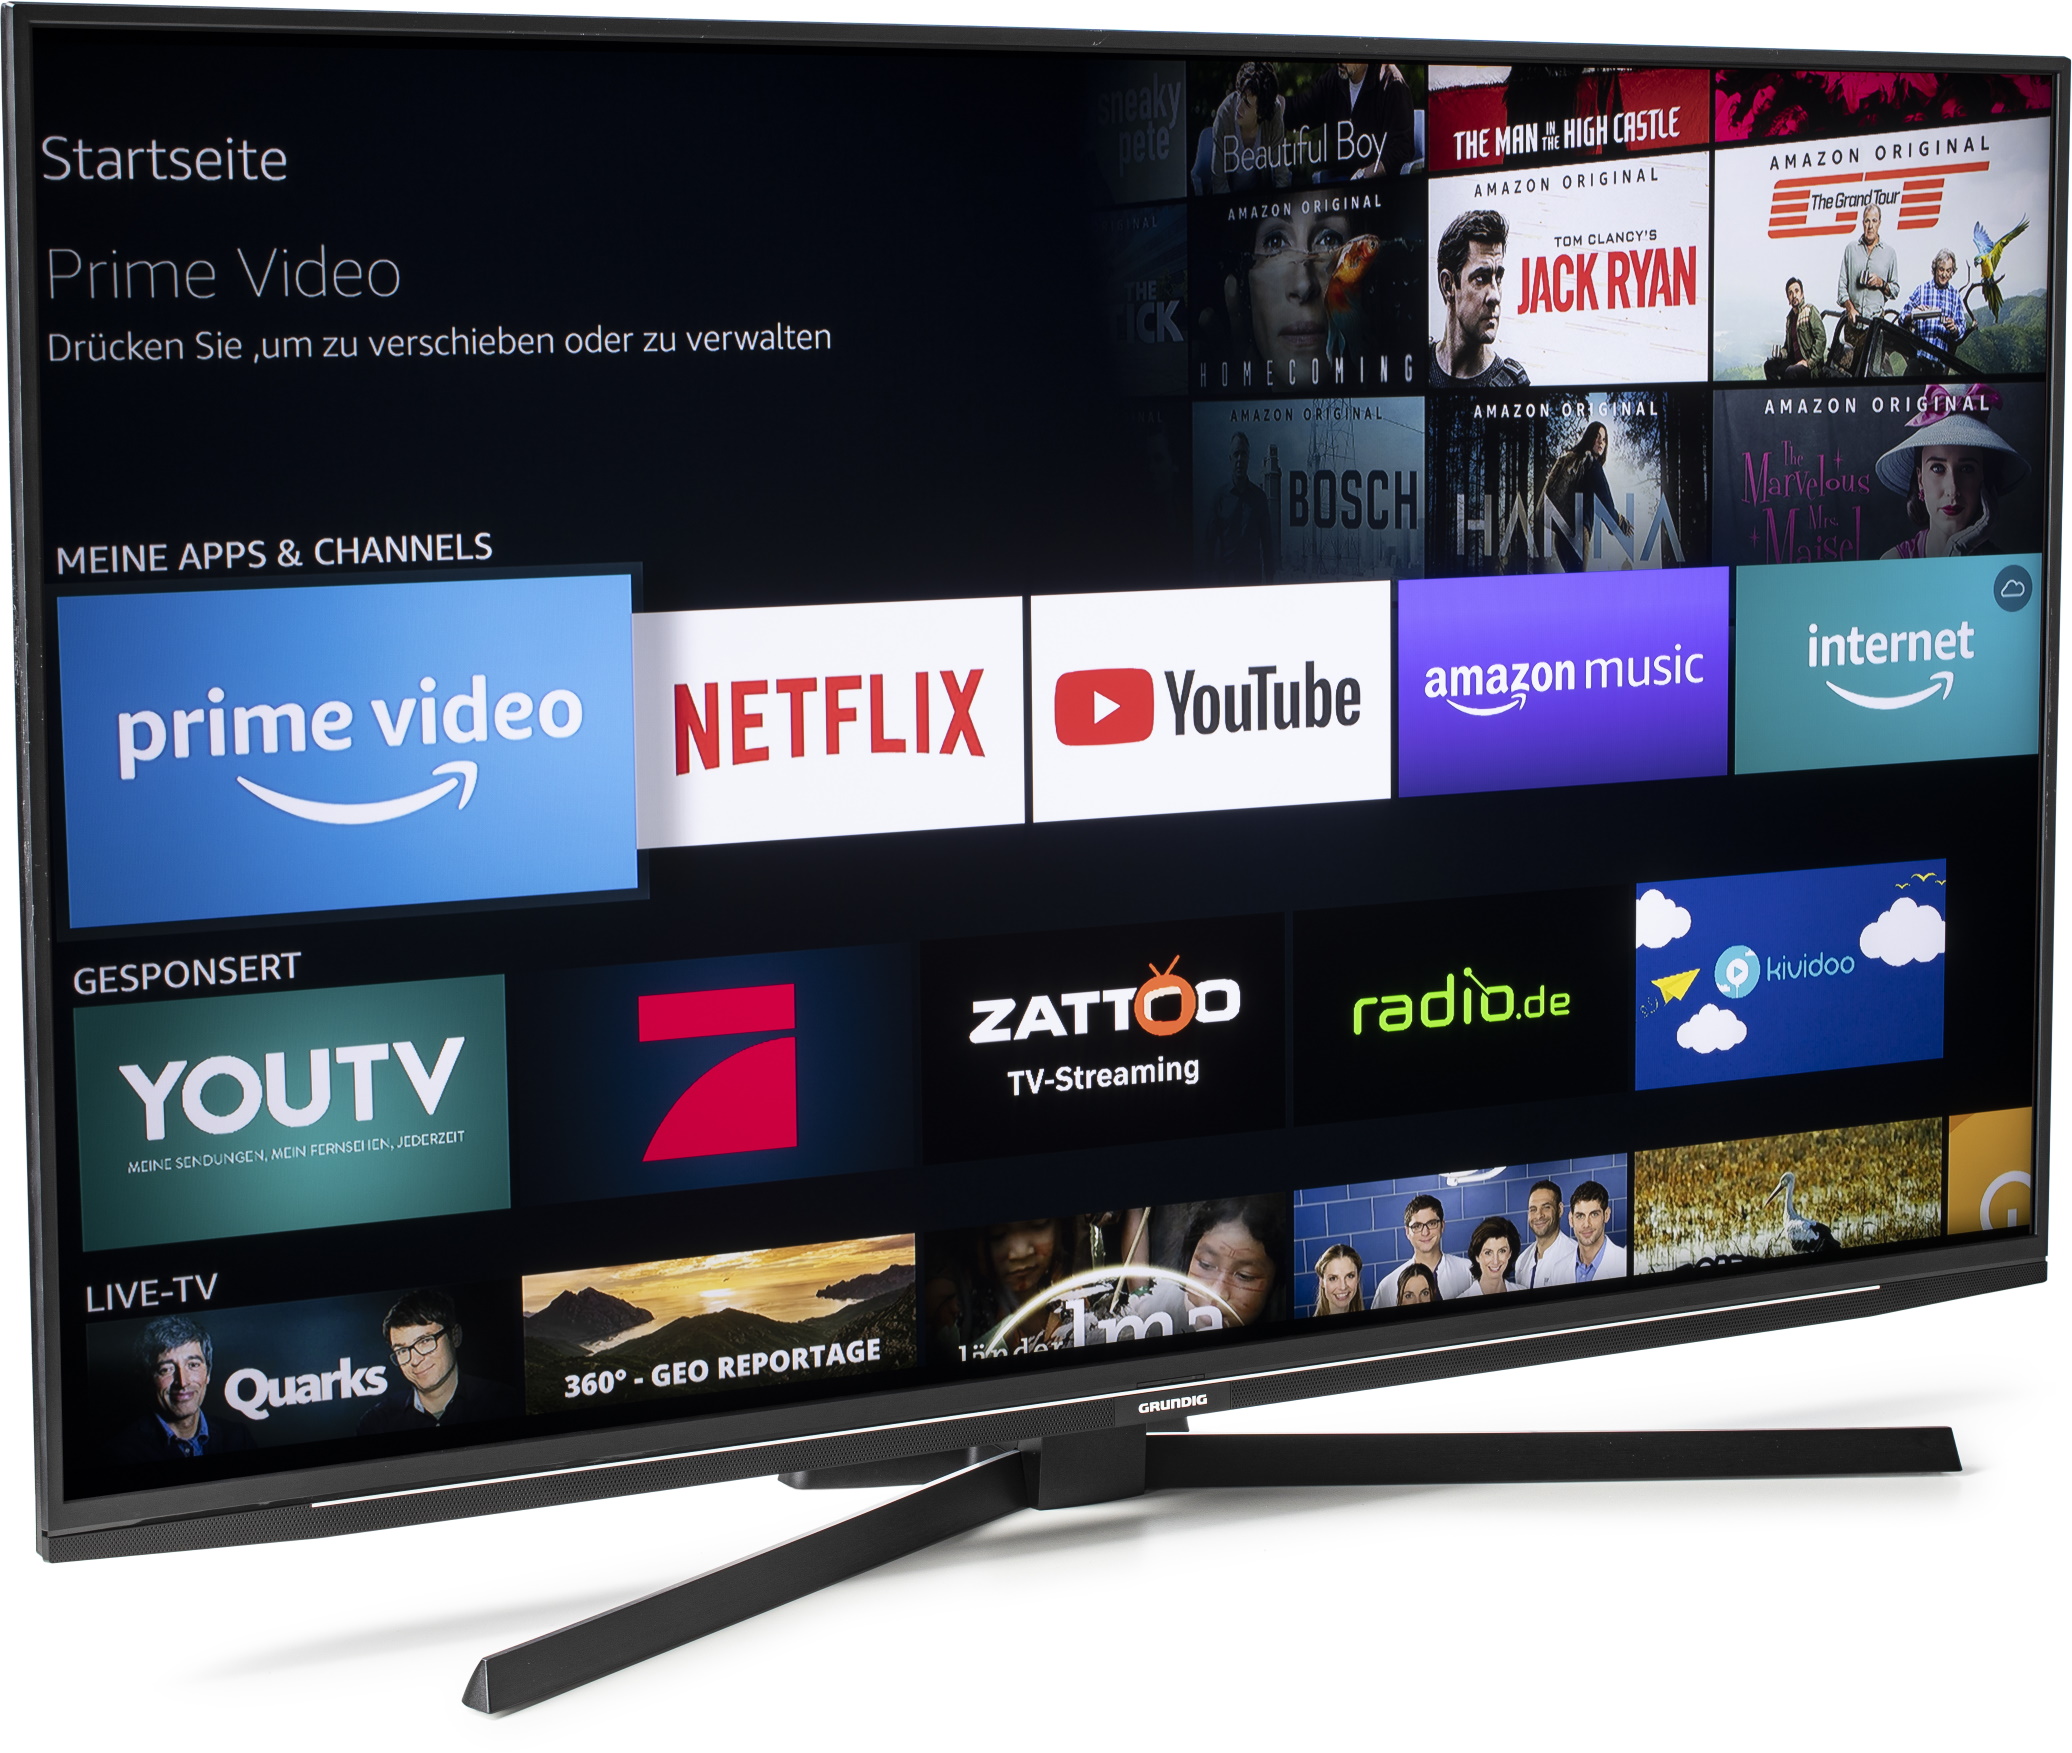 Amazon steigt ins Fernseher-Geschäft ein | heise online